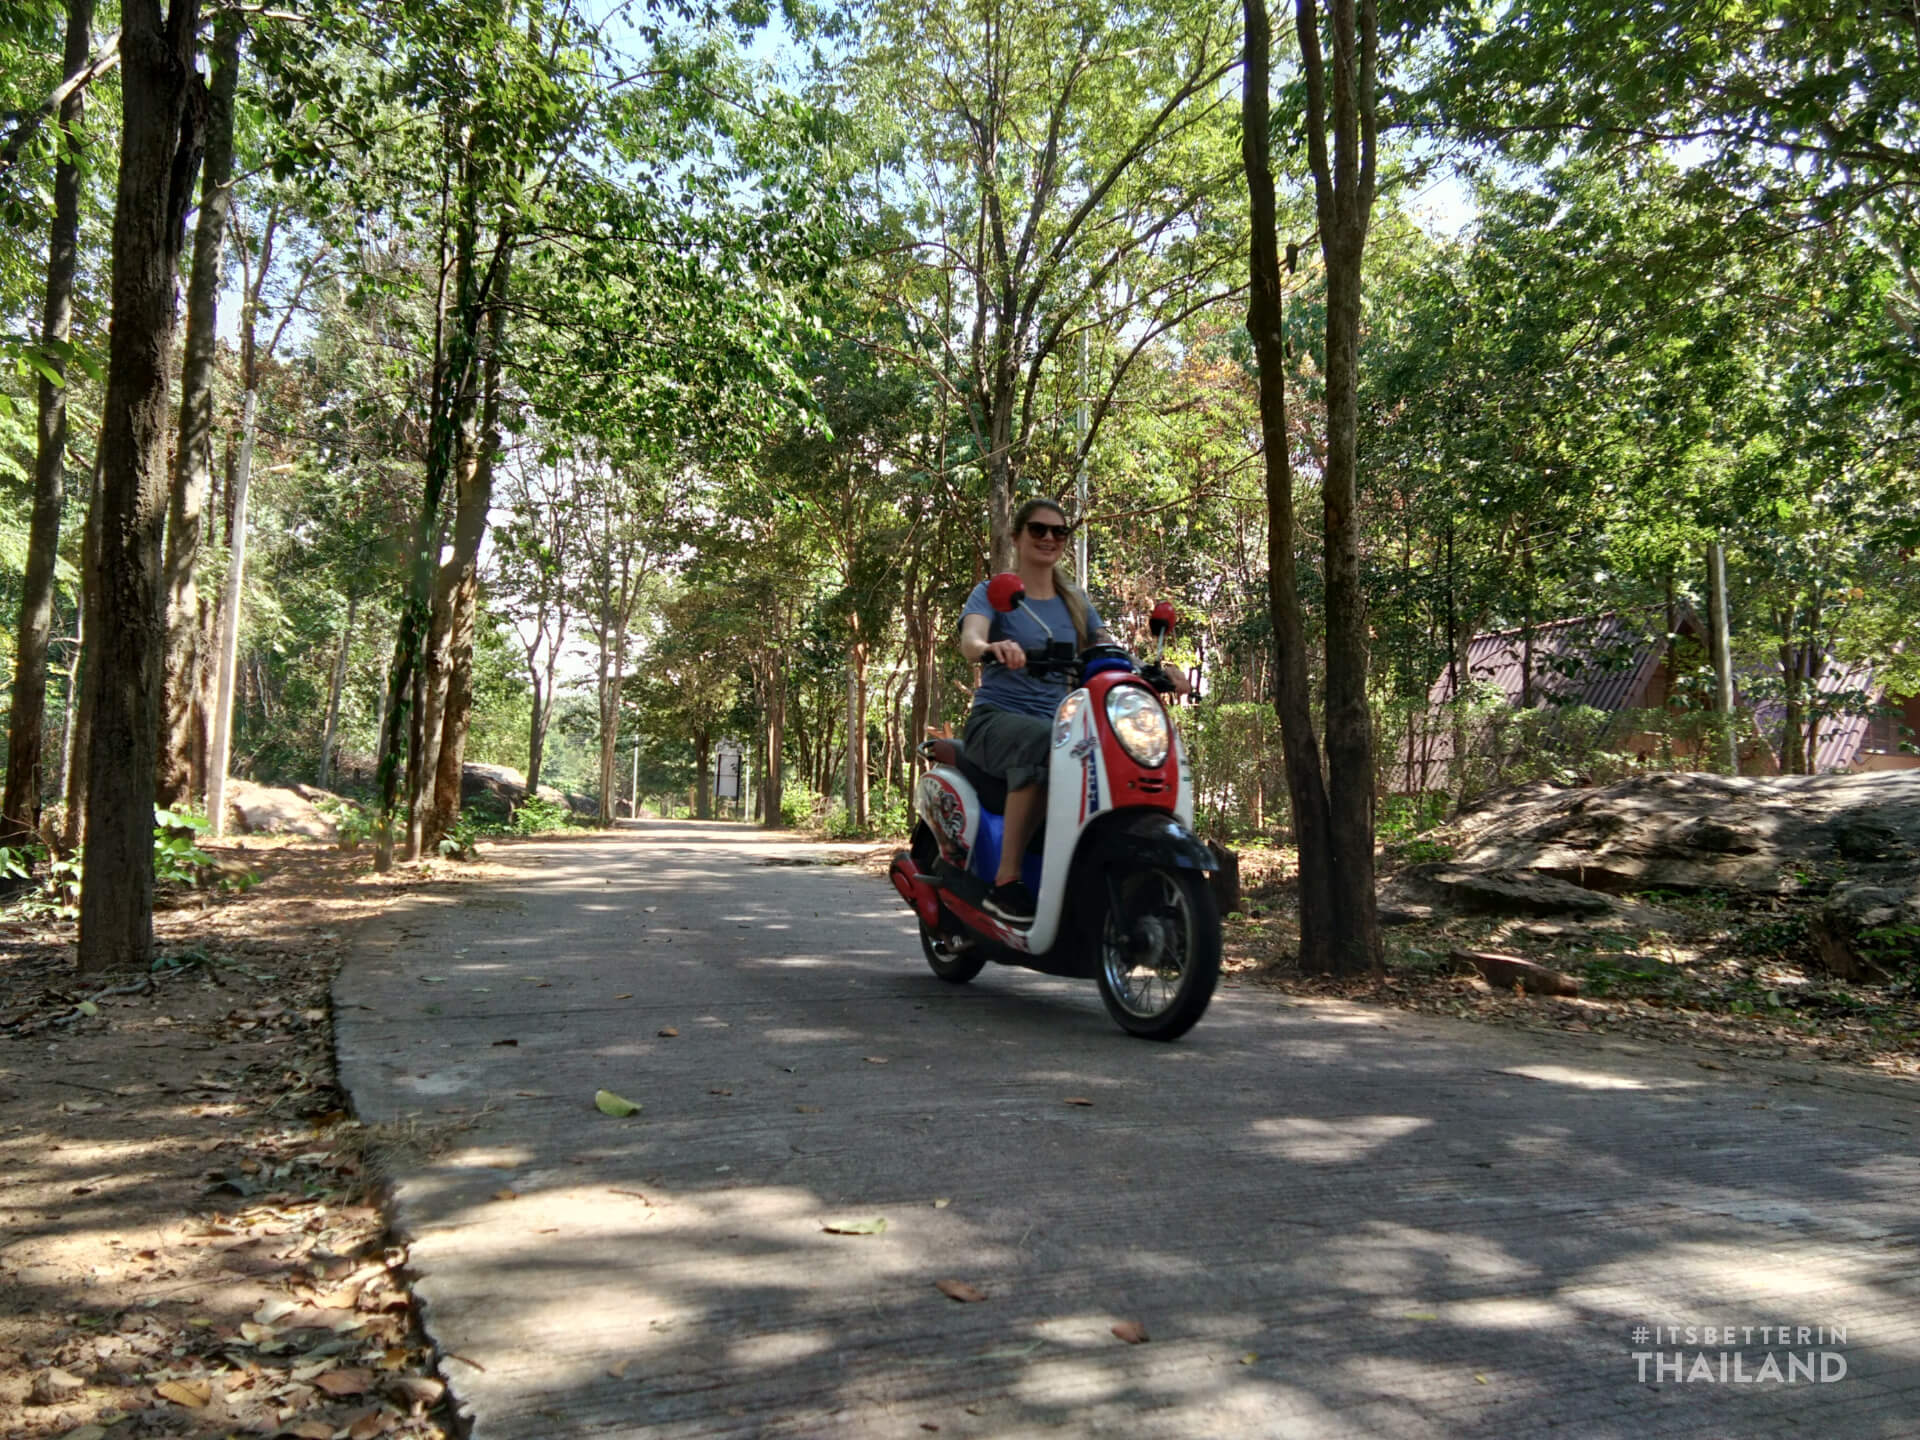 Motorbike rental at Khon Kaen zoo